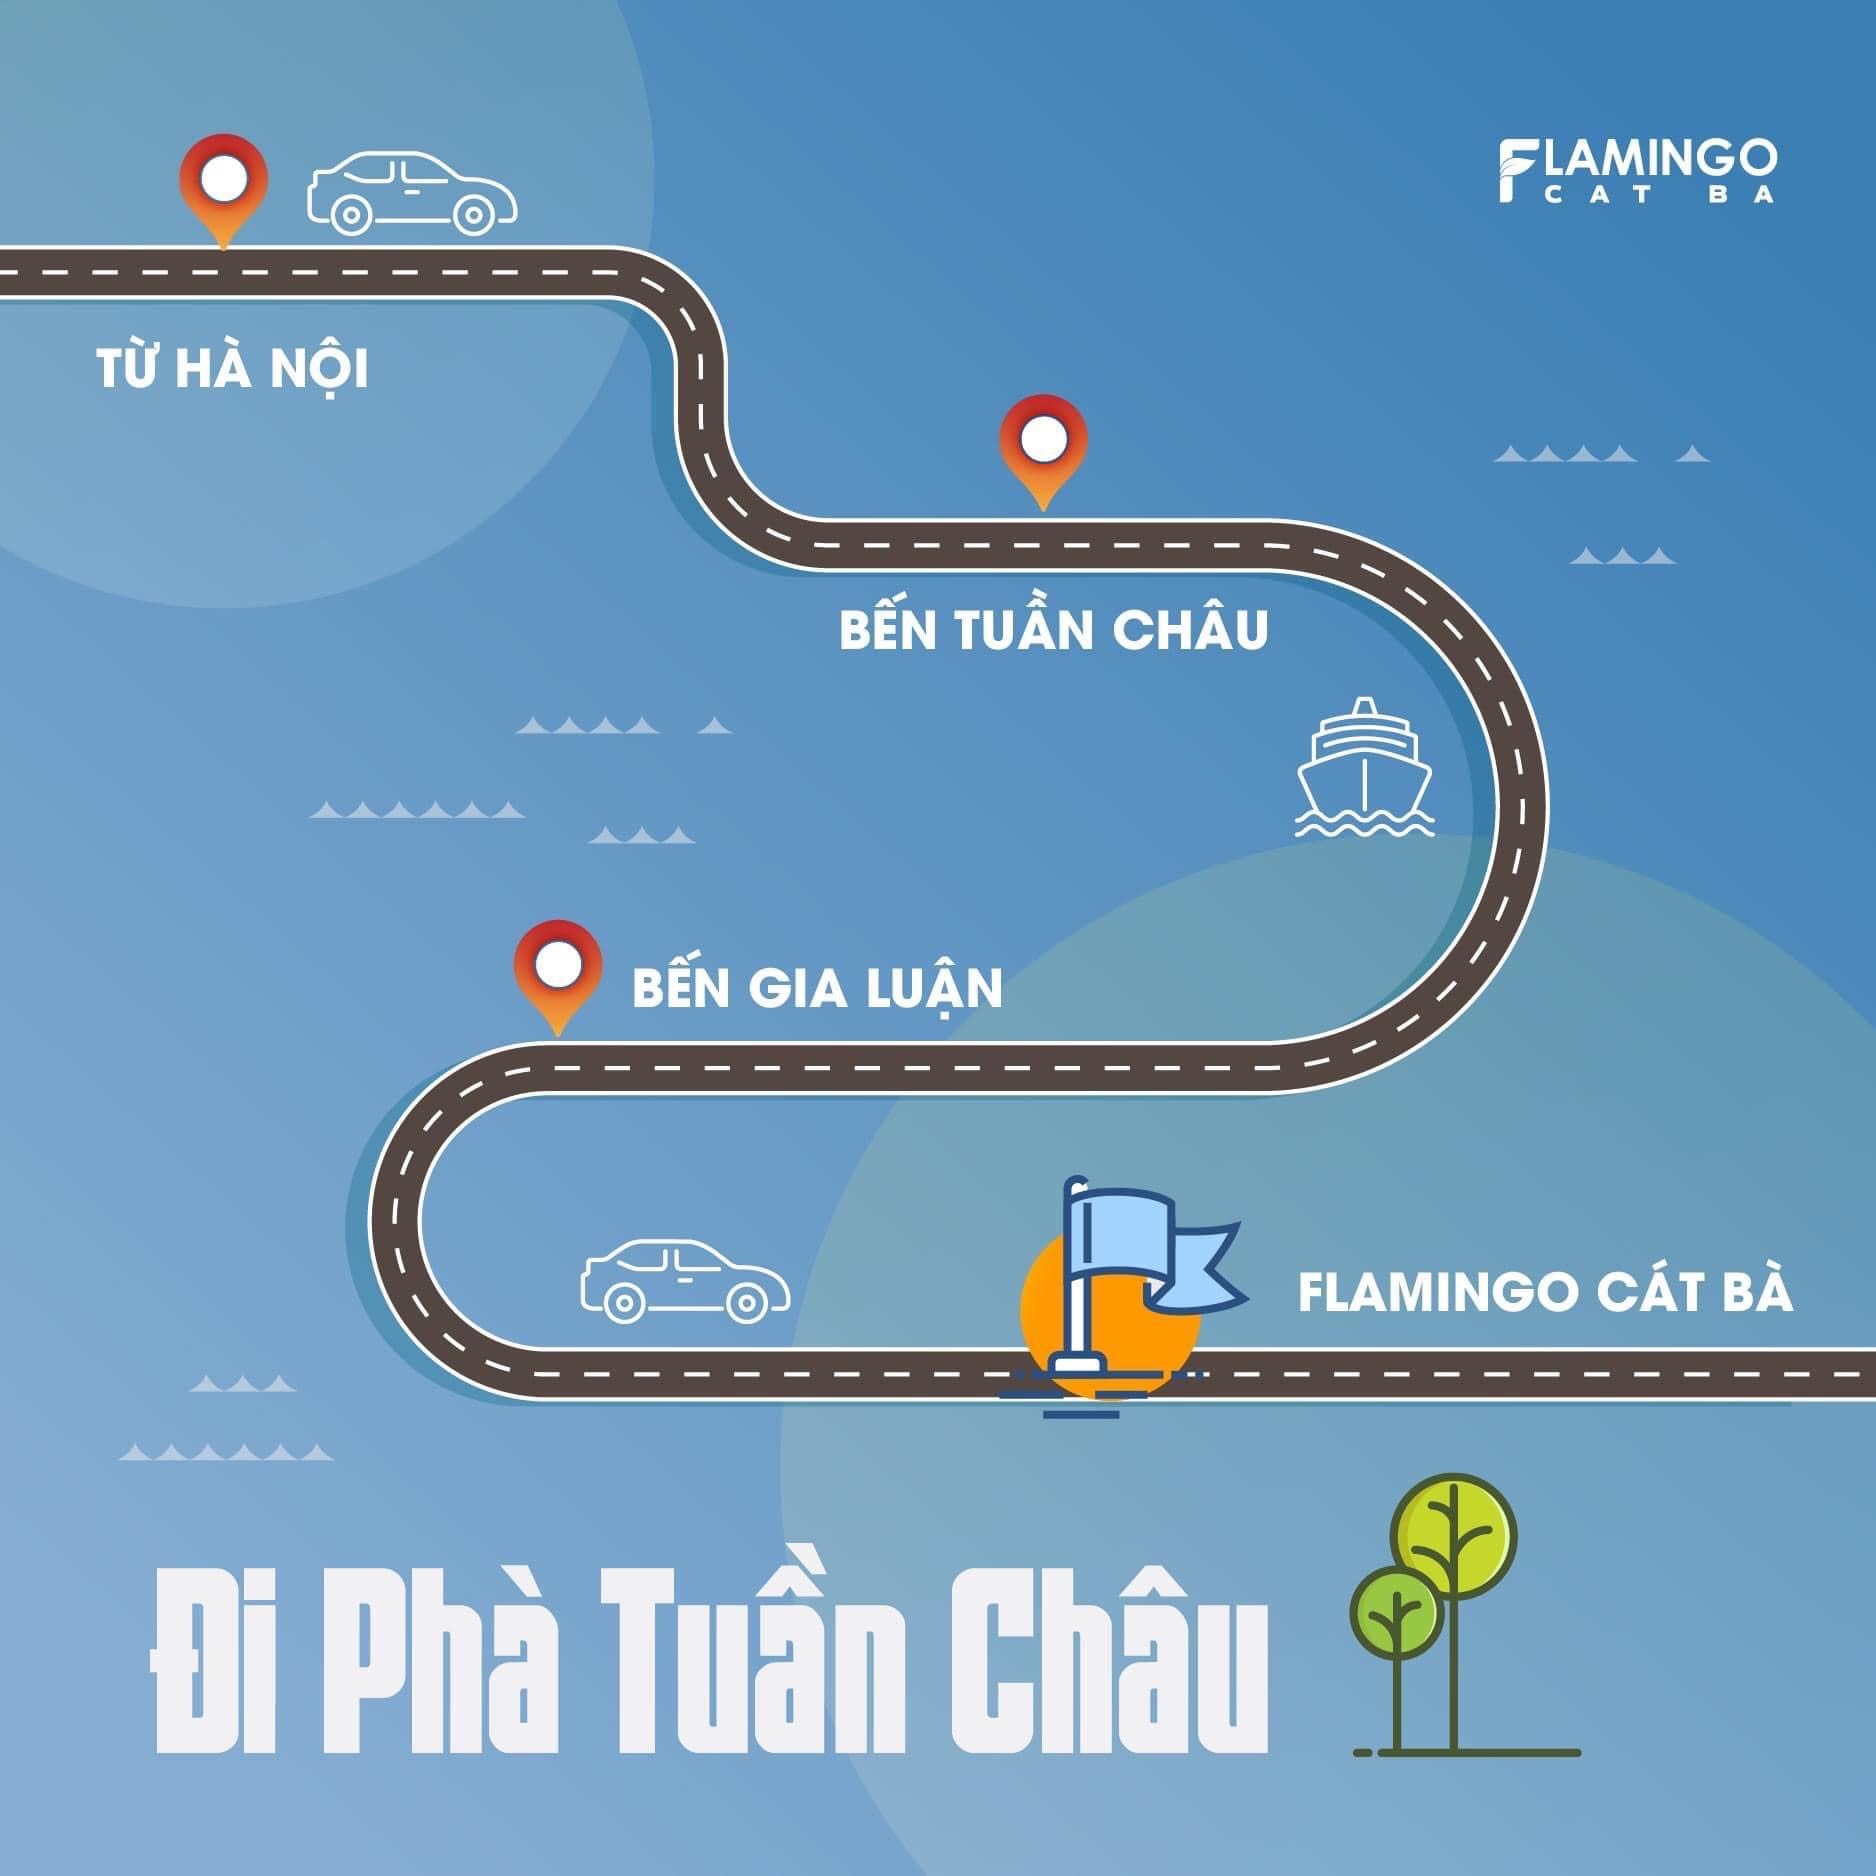 Tổng hợp 4 tuyến đường di chuyển từ Hà Nội đến Flamingo Cát Bà